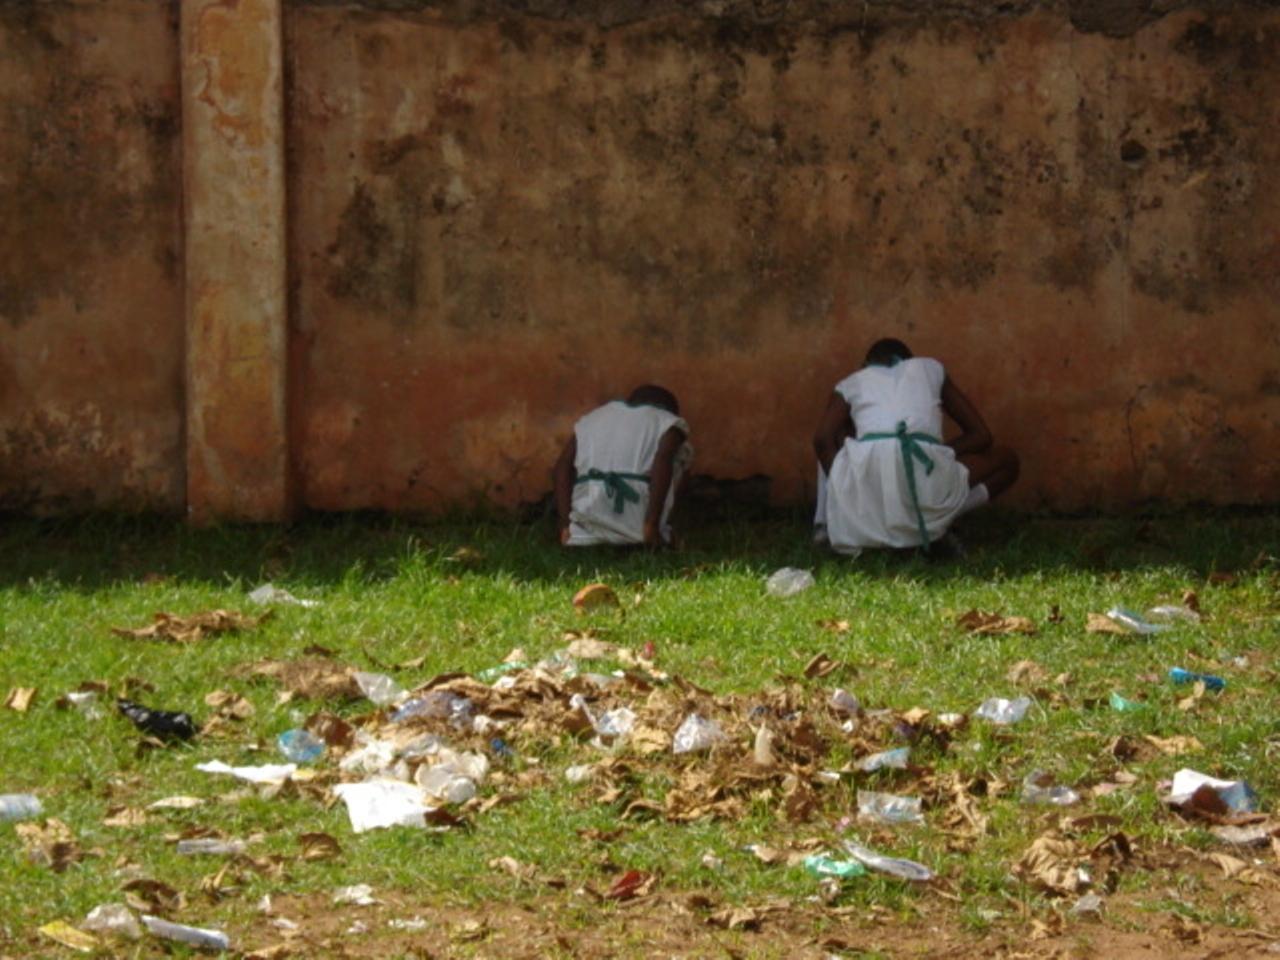 Indian school toilet